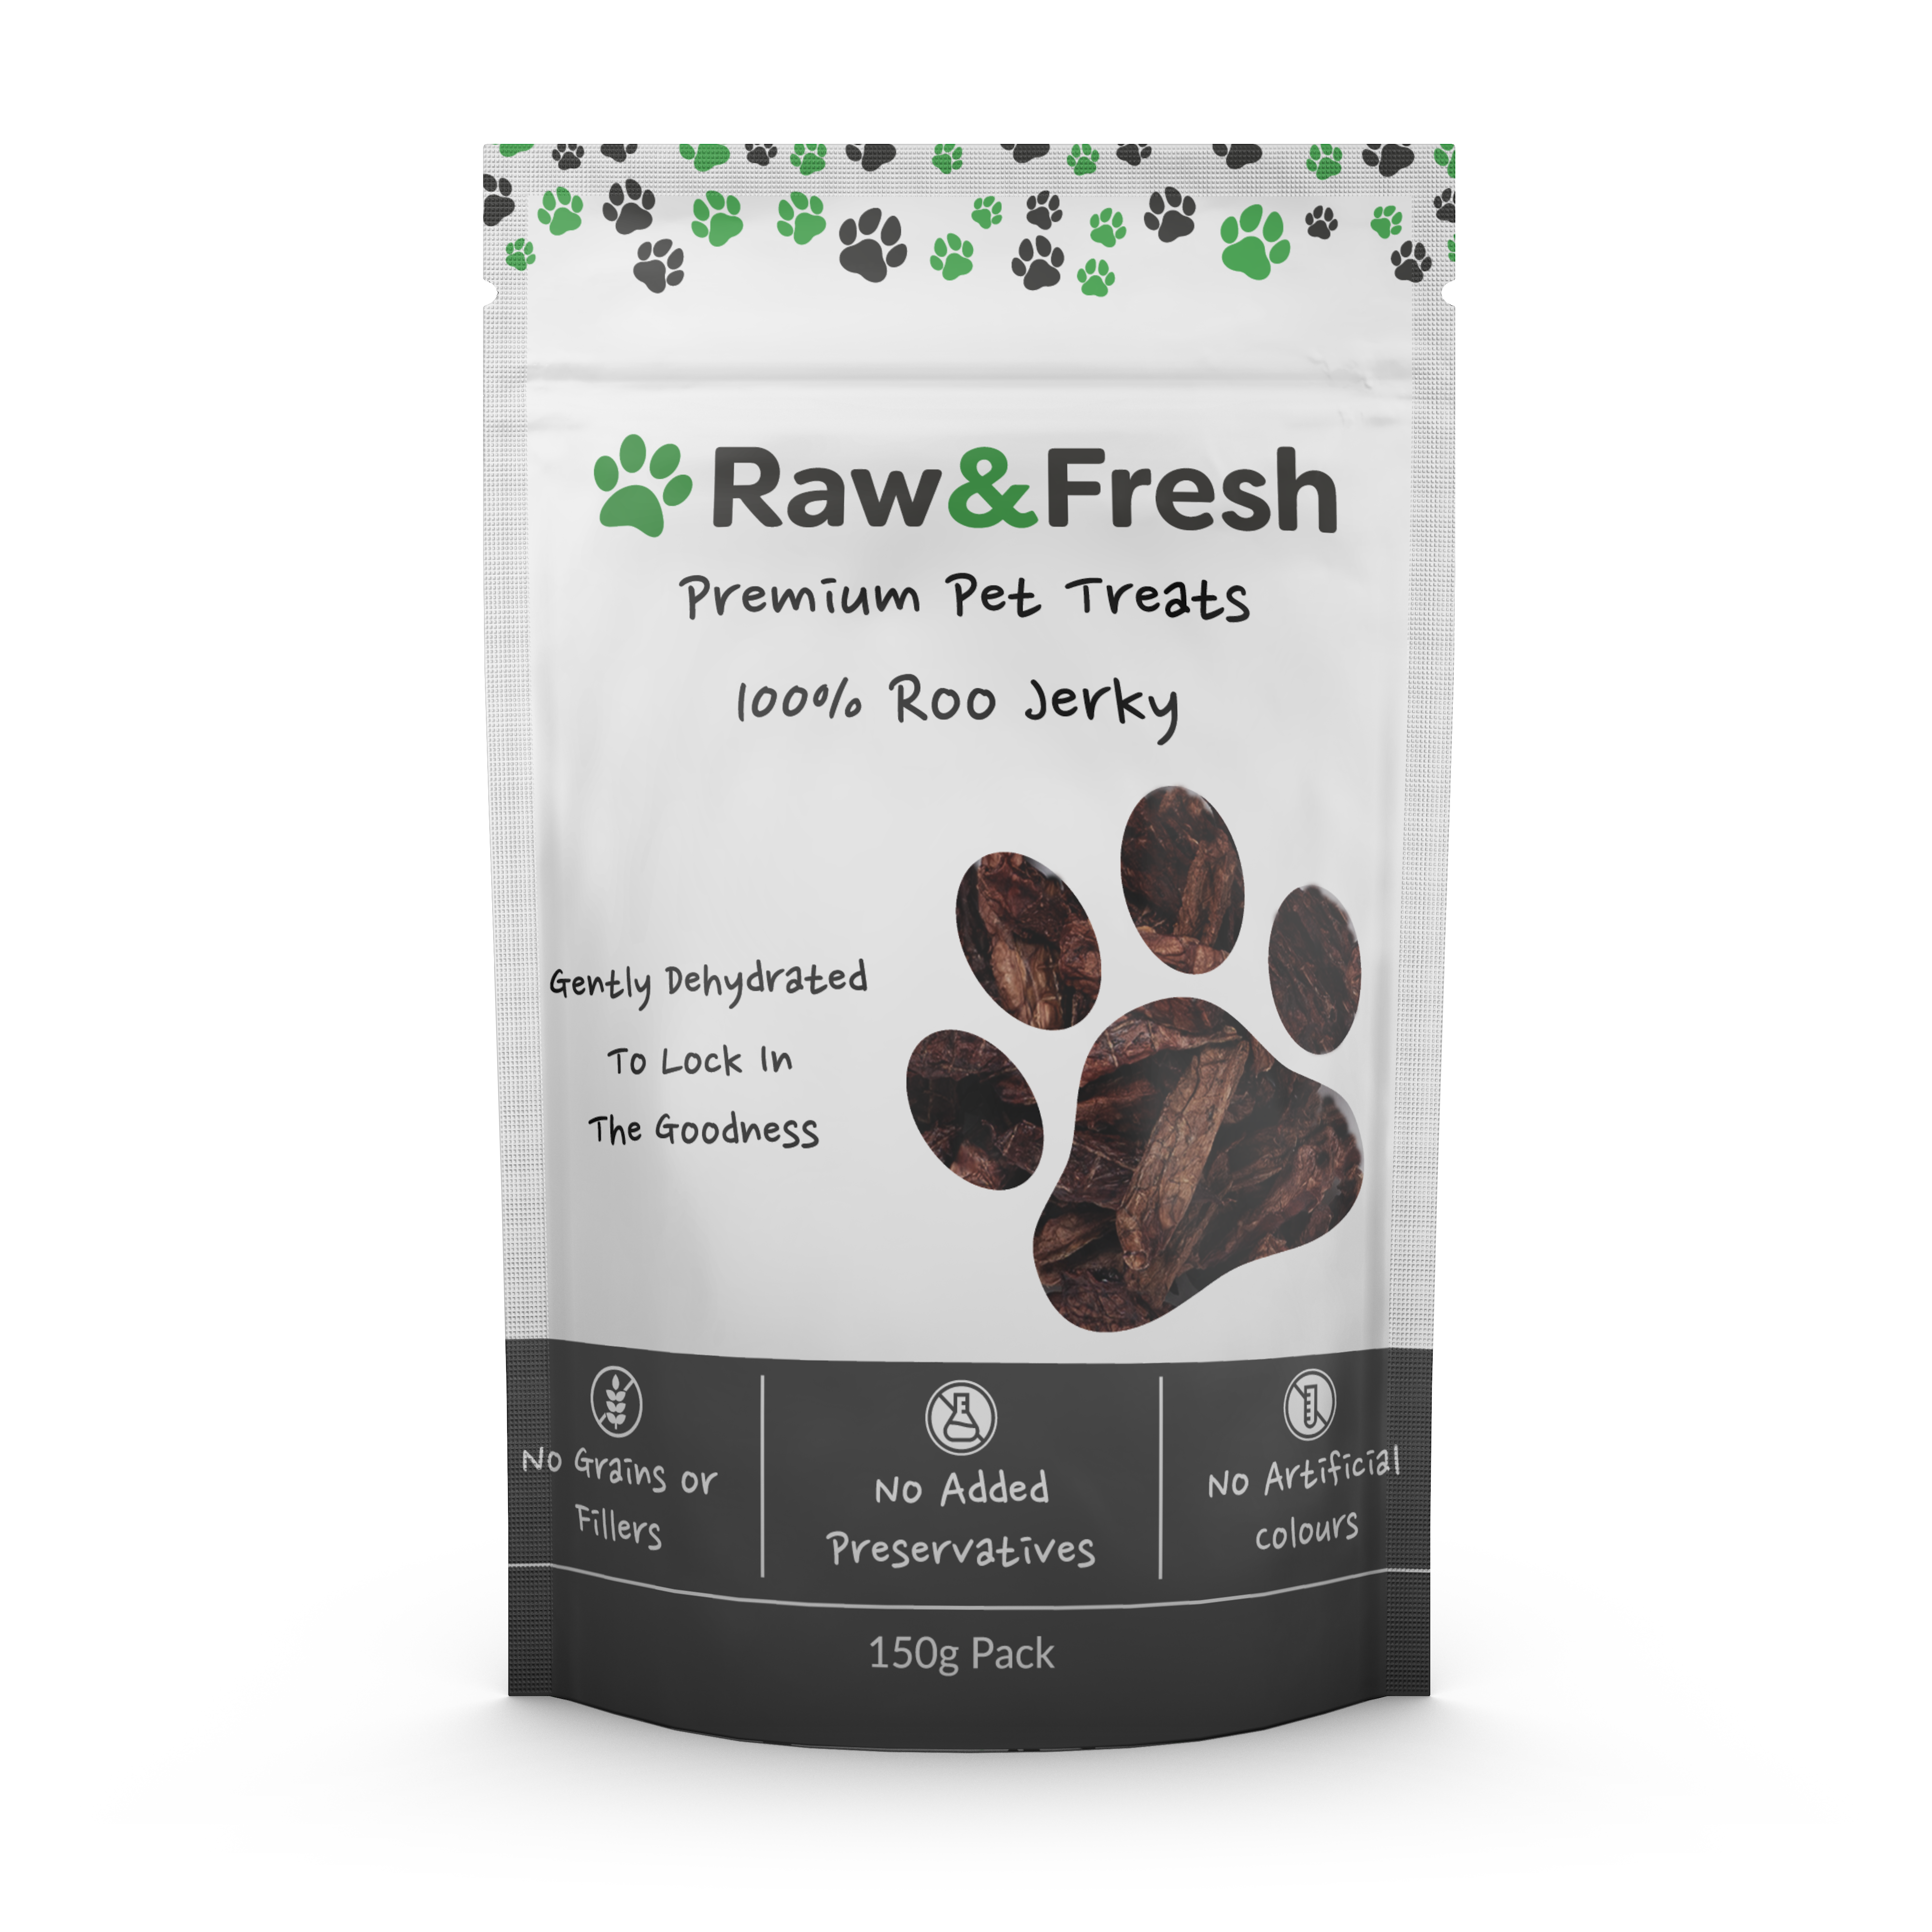 Raw & Fresh Dehydrated Kangaroo Jerky Dog Treats 150g Pack